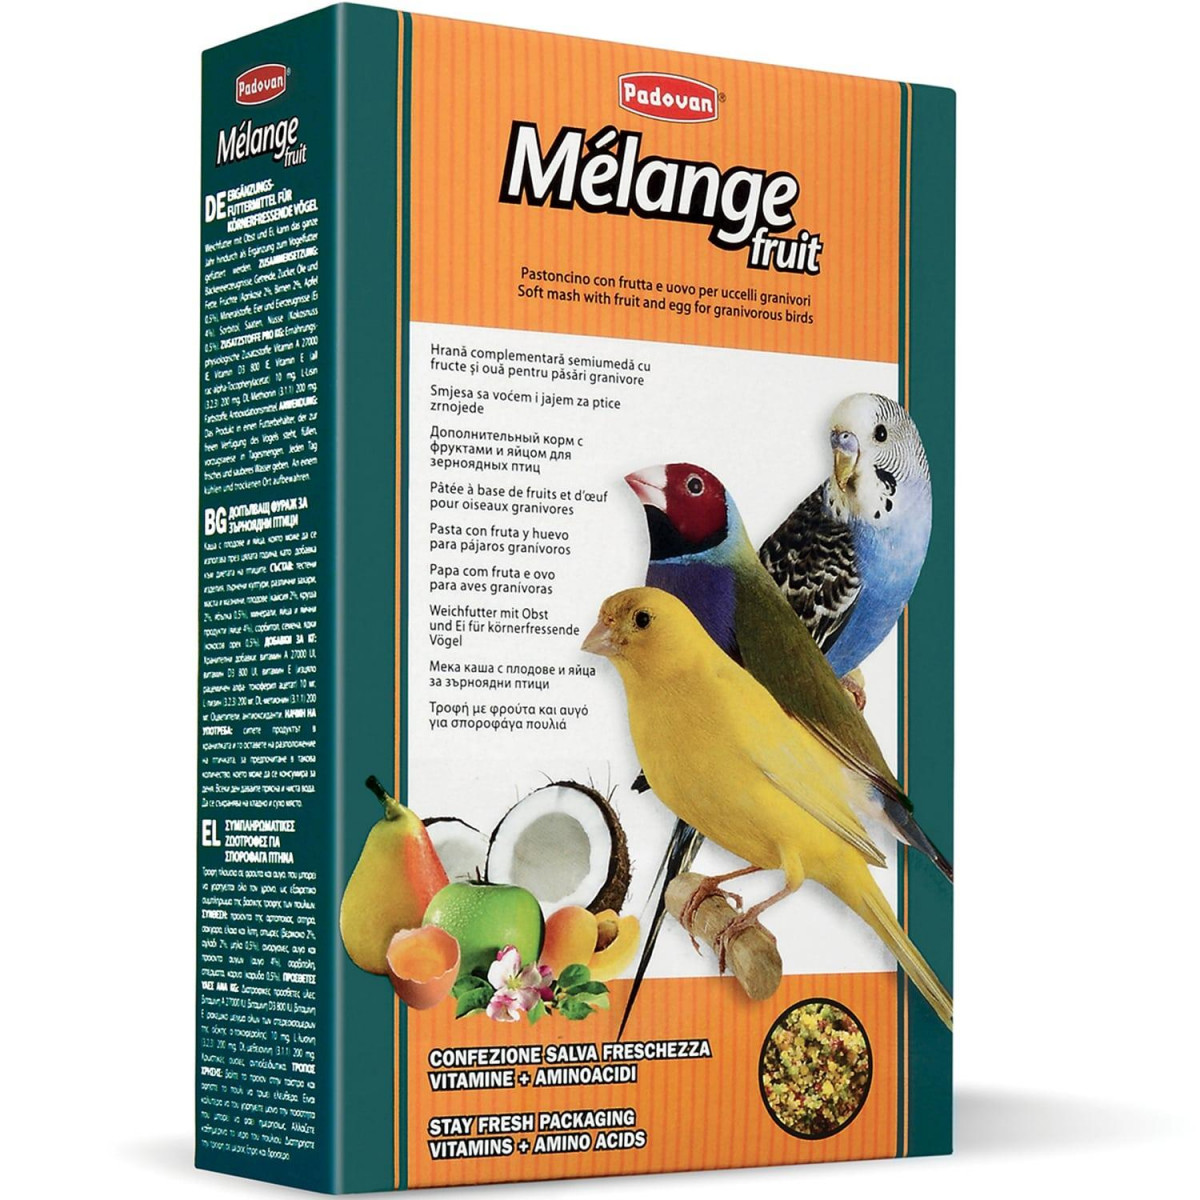 ПАДОВАН MELANGE FRUIT Дополнительный корм для зерноядных птиц с фруктами и яйцом